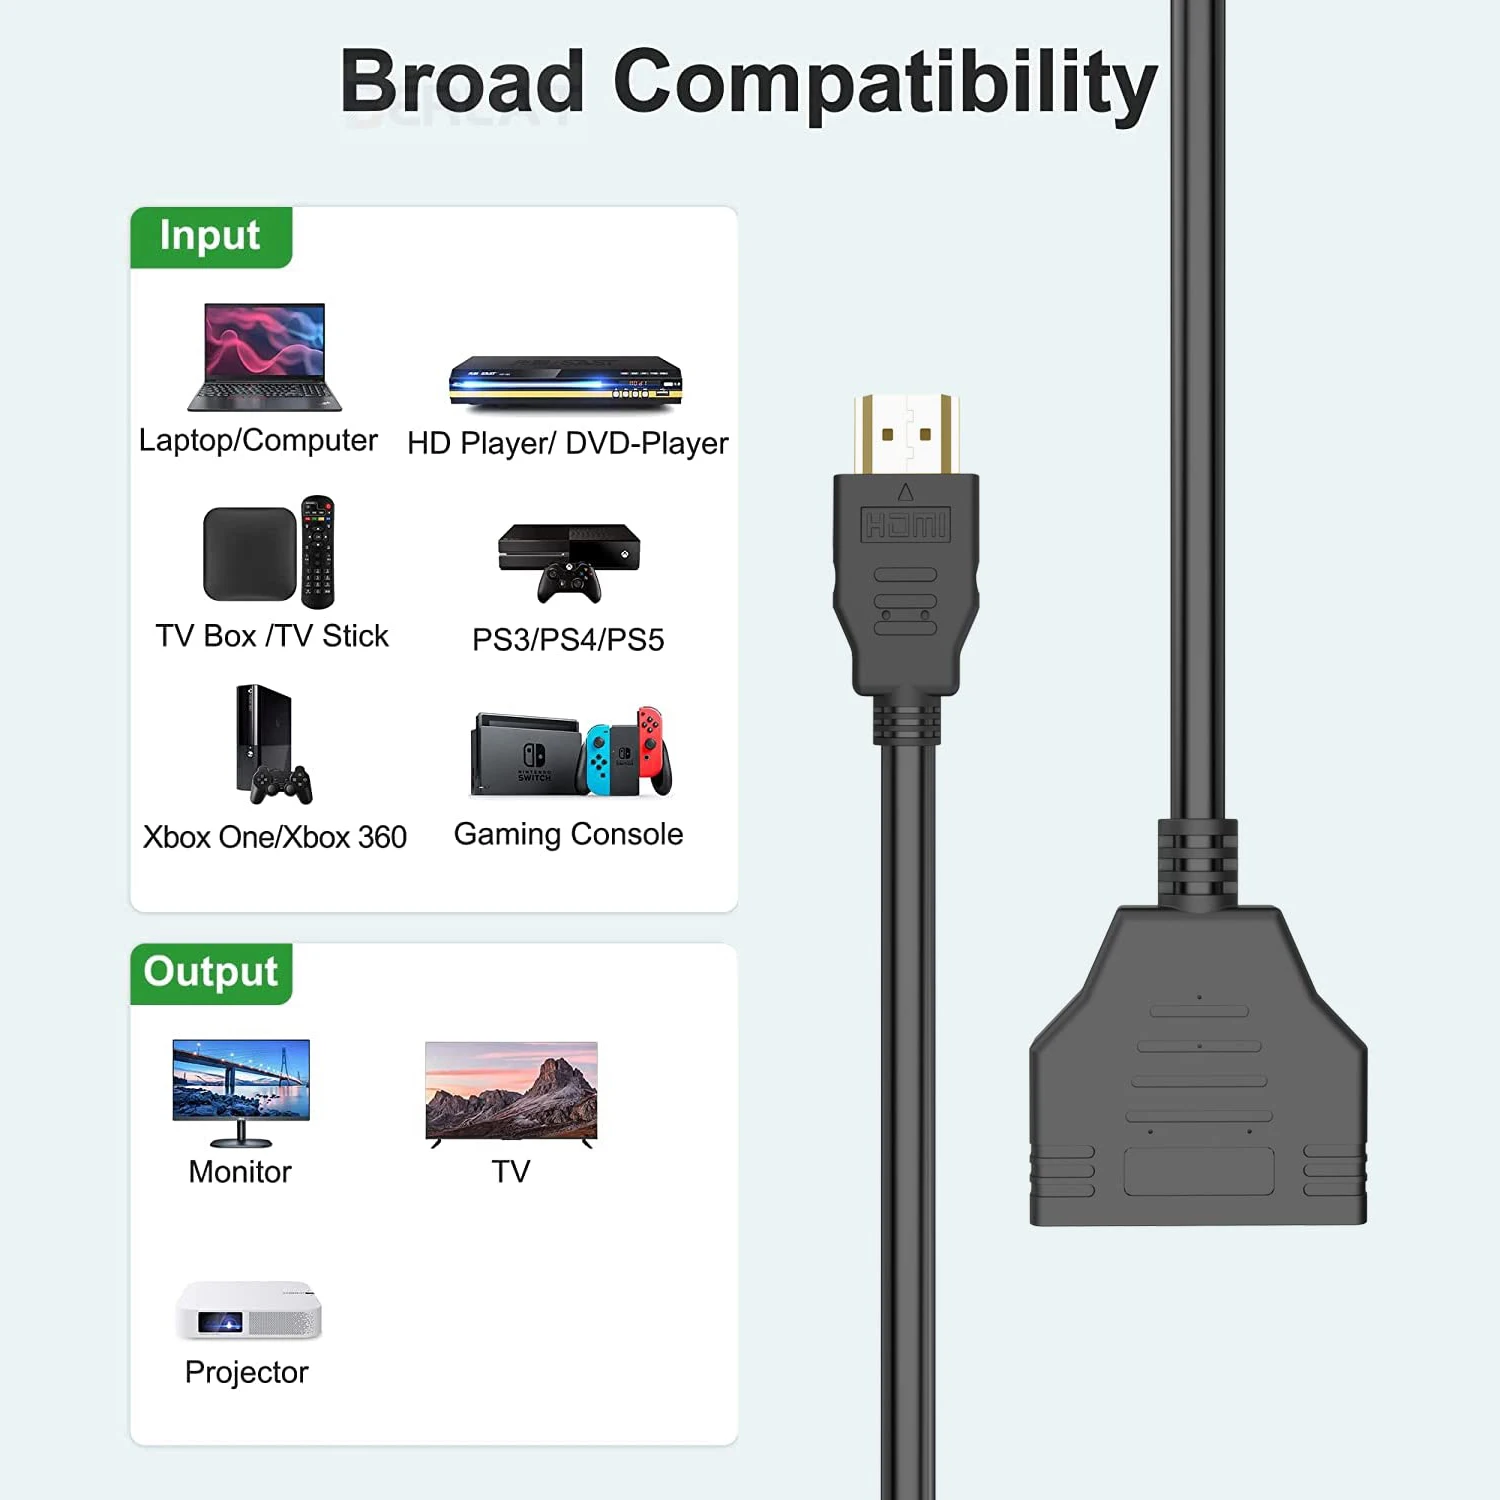 Ccdes Cable Divisor HDMI 1080P HDMI a Doble HDMI Cable Adaptador de Divisor  de 1 a 2 vías para TV HD, 1 HDMI a 2 Cables divisores HDMI ANGGREK No se  aplica